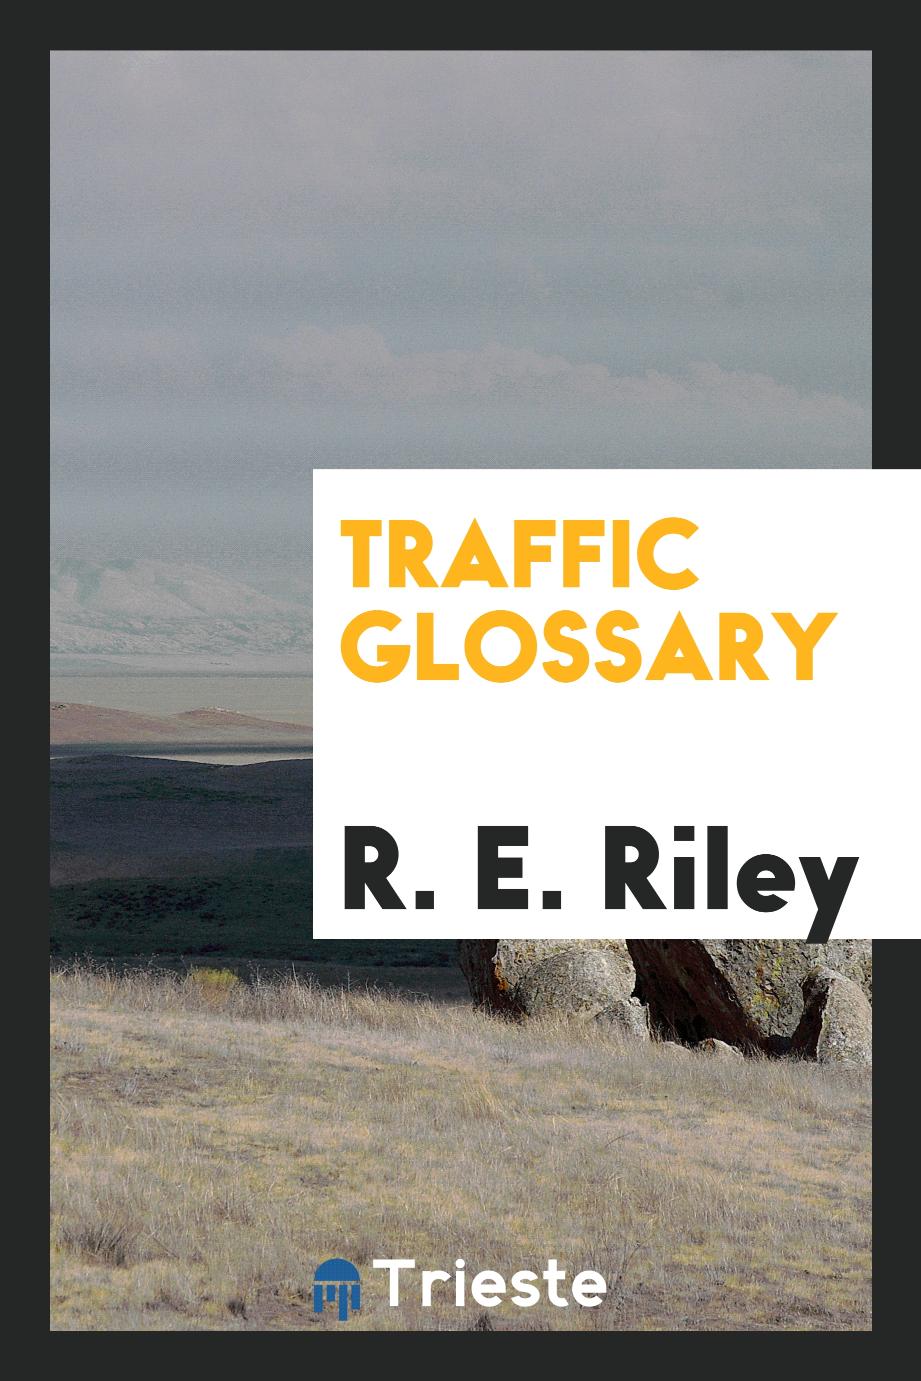 Traffic glossary